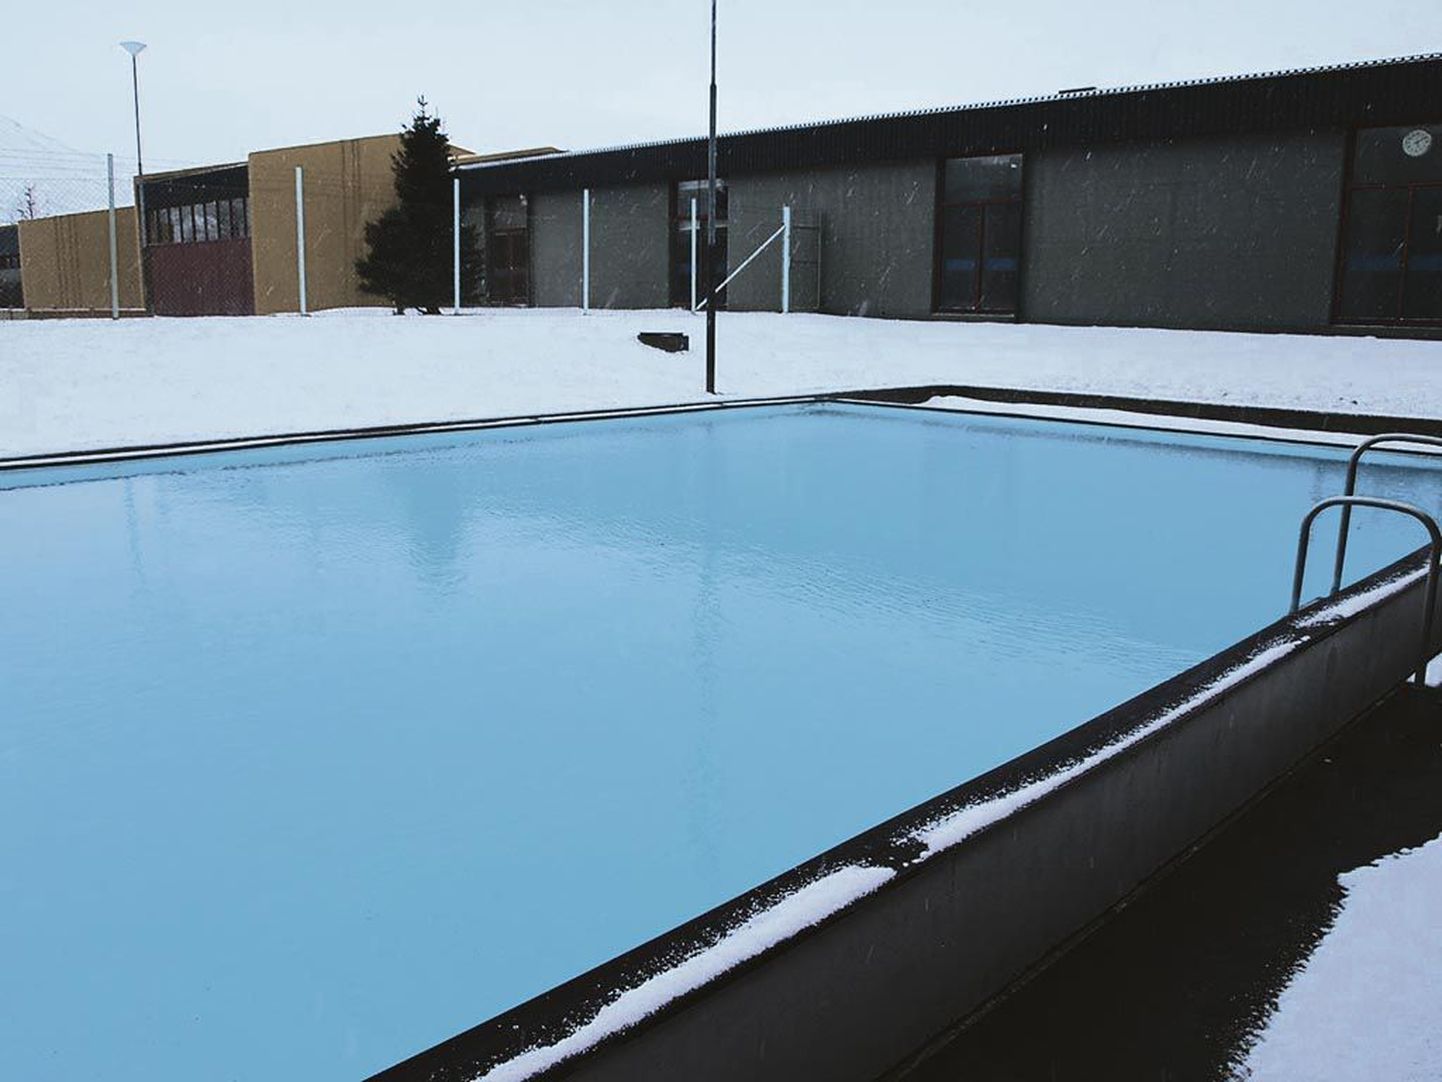 Selline bassein on Islandil viiekümne õpilasega koolil. Eestis püütaks selline väikekool esimesel sobival võimalusel kinni panna. Islandil seevastu on ammu aru saadud, et kui kaob kool, siis lähevad varsti ka inimesed.